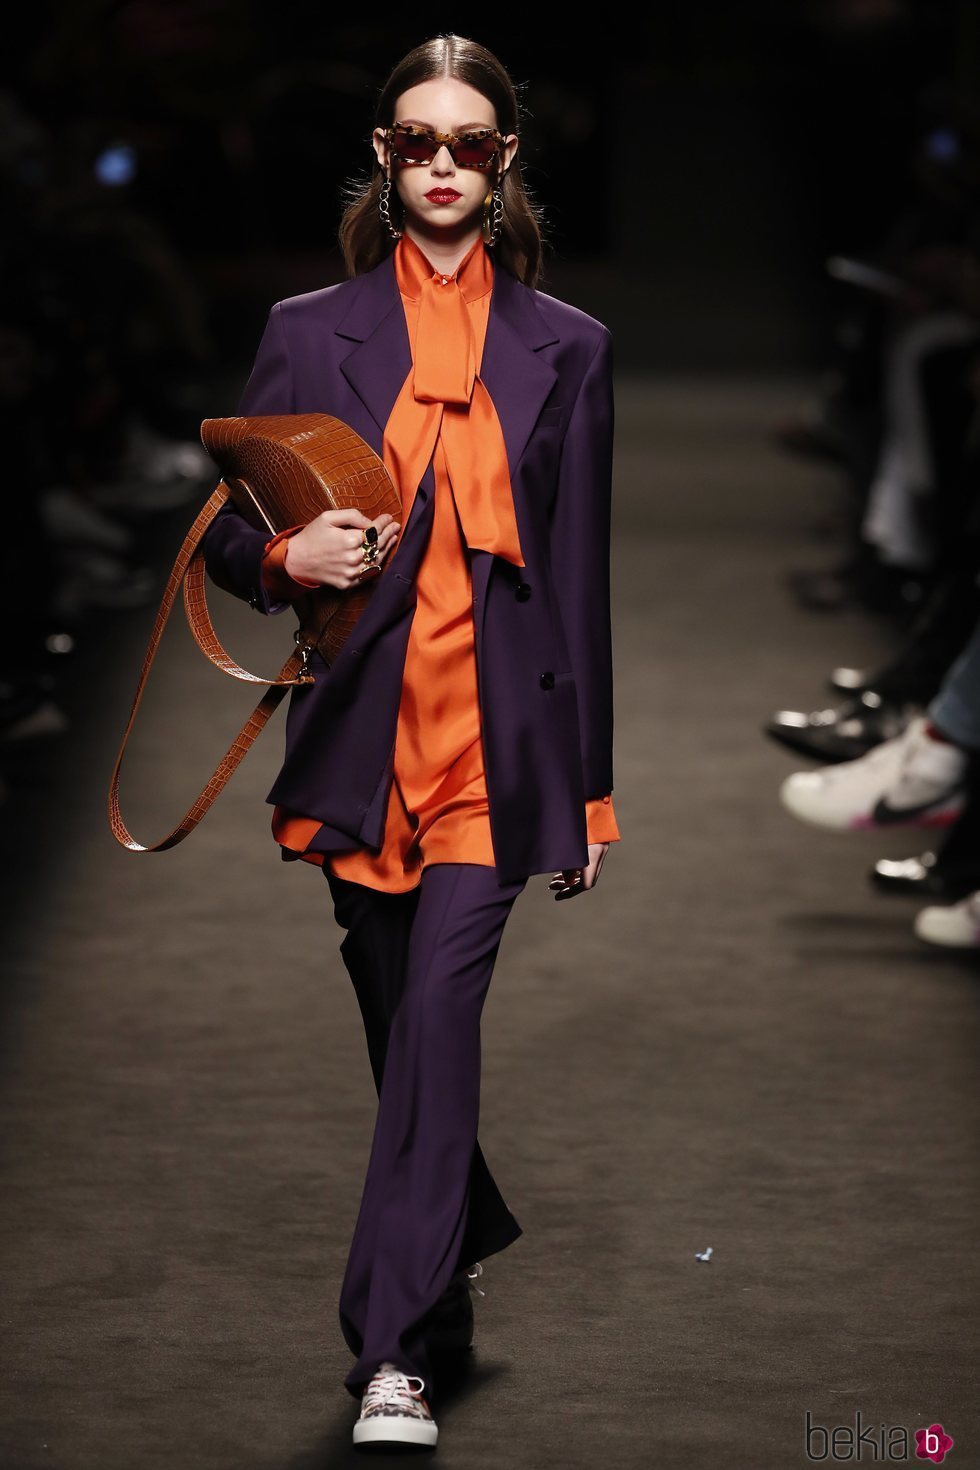 Modelo con un conjunto morado y naranja de la colección otoño/invierno 2019/2020 de Jorge Vázquez